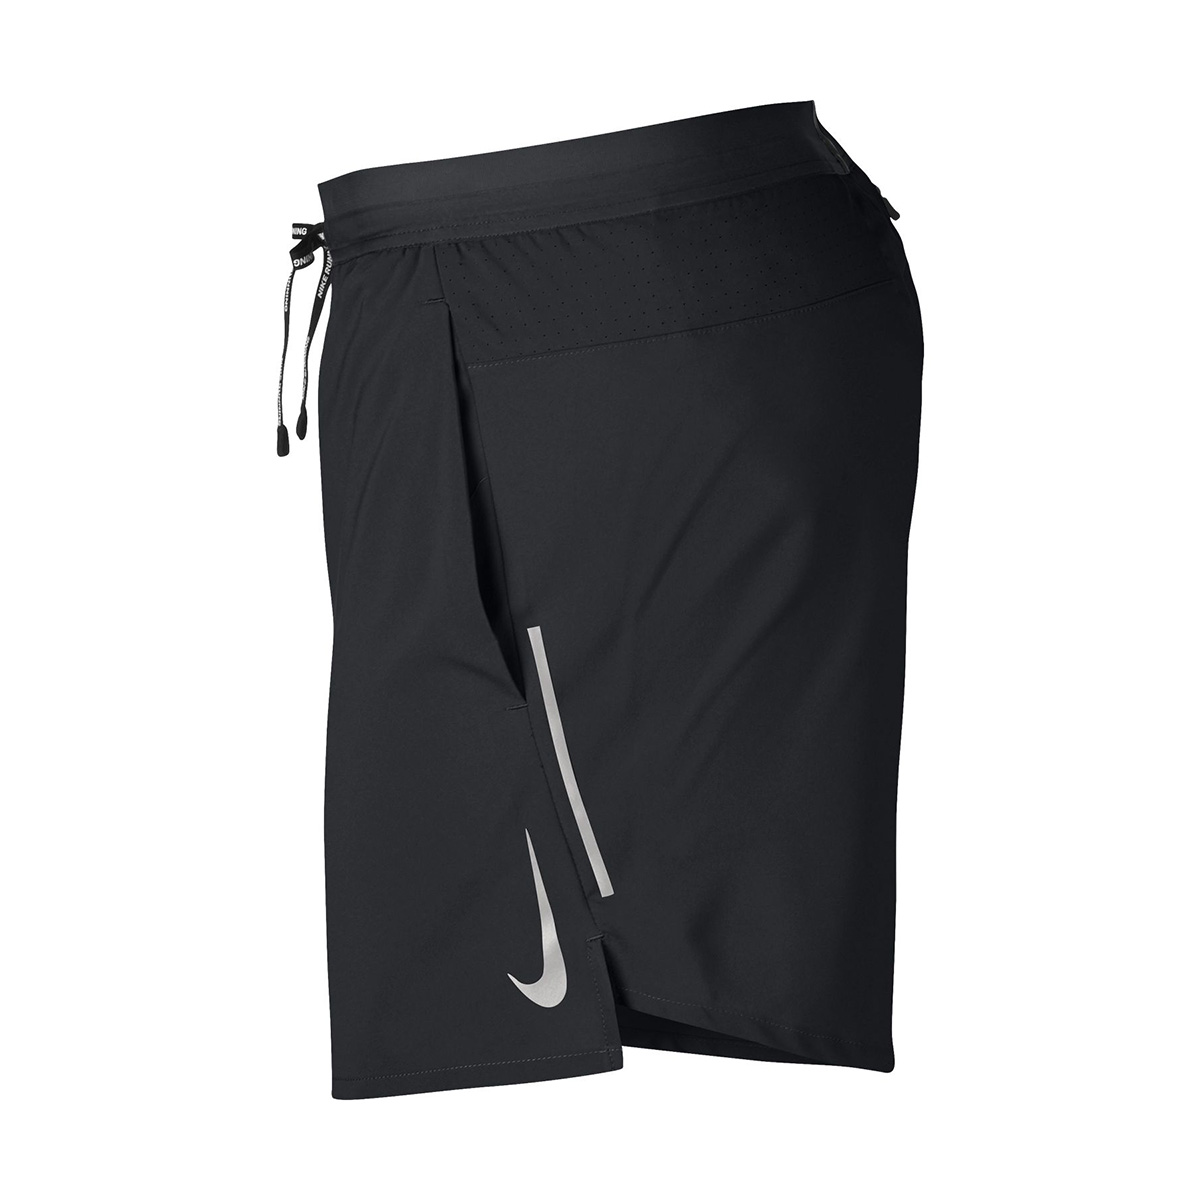 Nike Flex Stride 5" Short, , large image number null